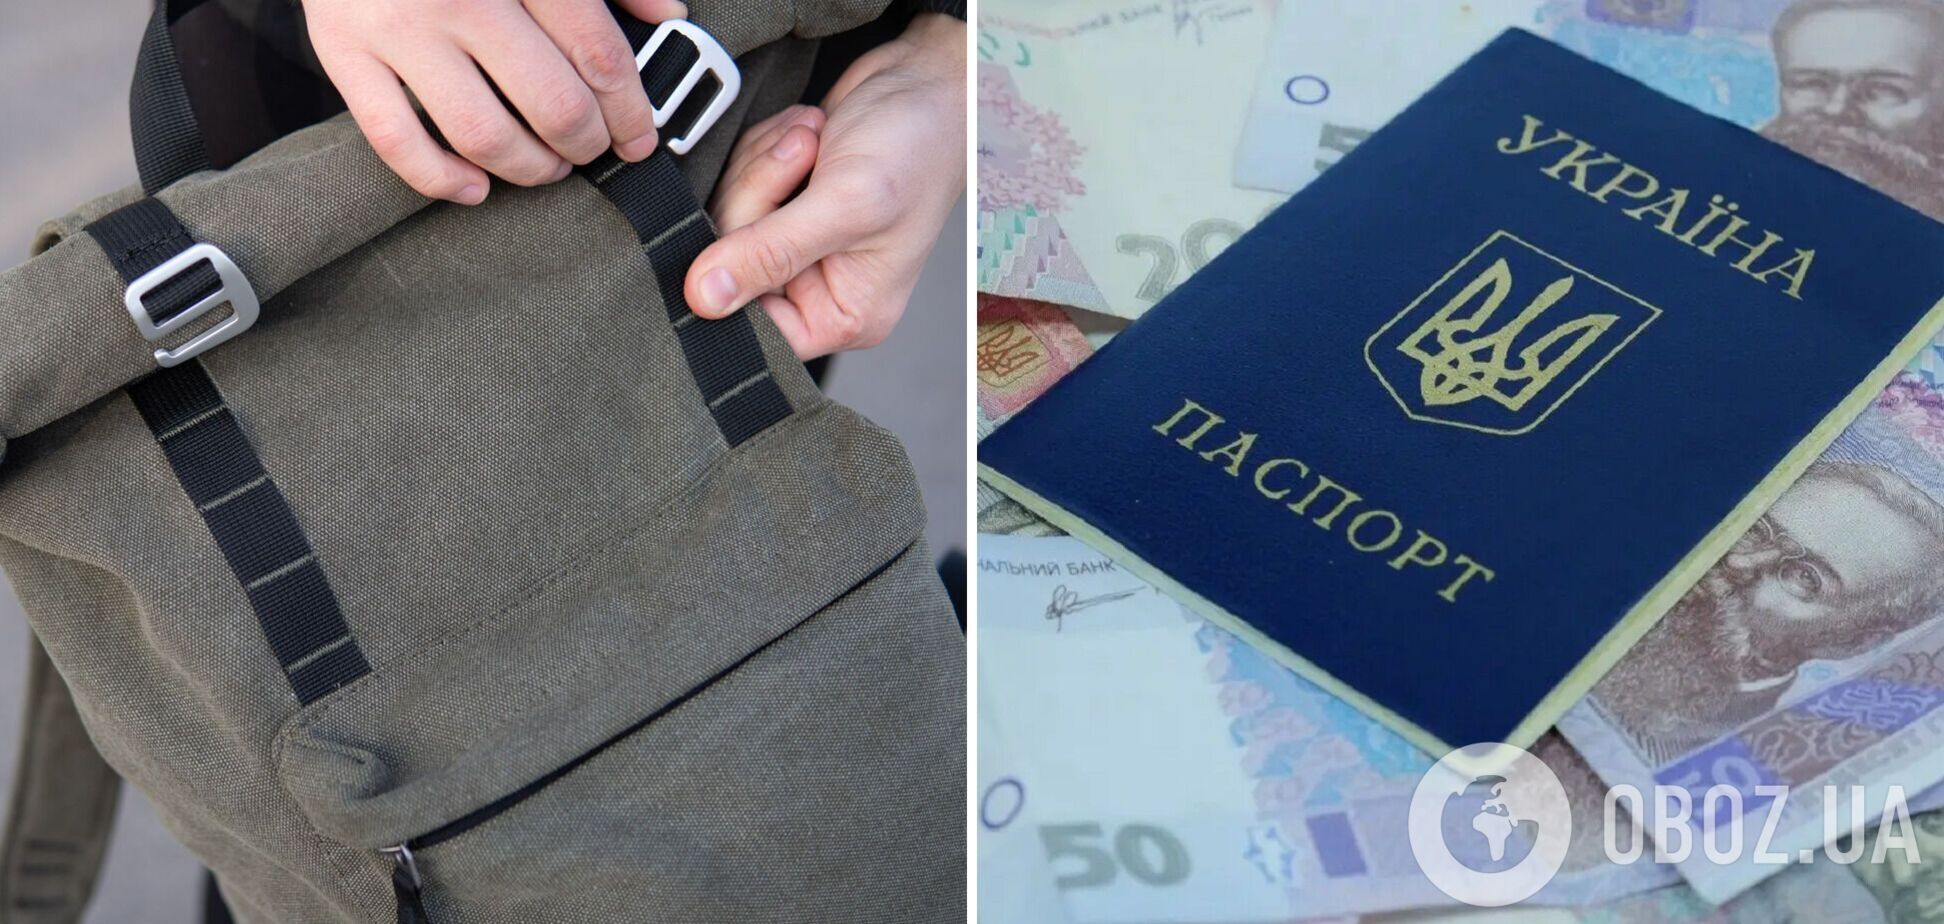 Тревожный чемоданчик в России посоветовали собирать с украинской валютой и документами